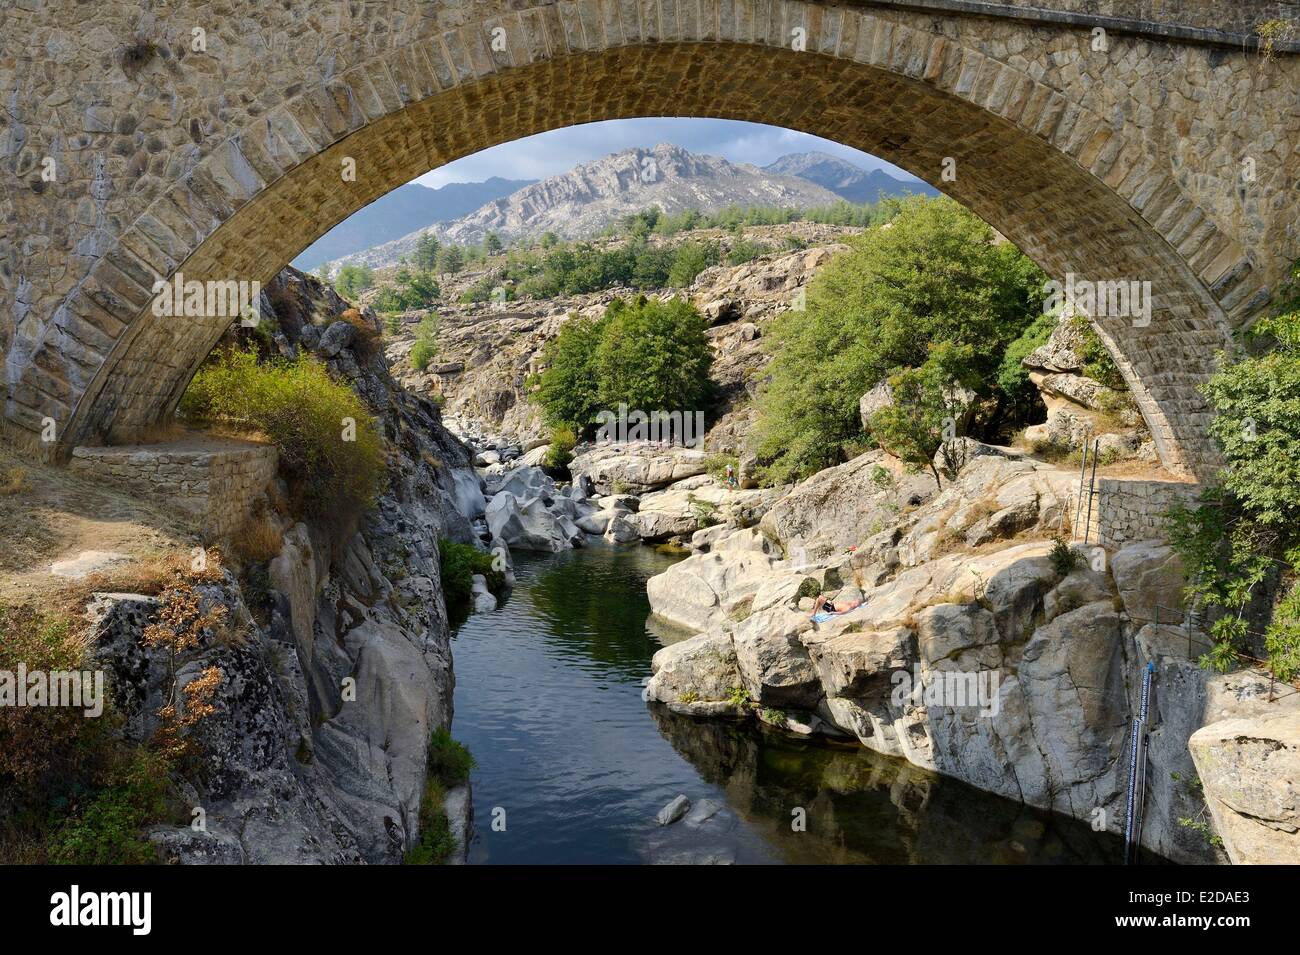 France, Haute Corse, Niolu (Niolo) région, la natation dans la rivière Golo autour du pont génois Ponte pension, le nouveau pont de la D84 Banque D'Images